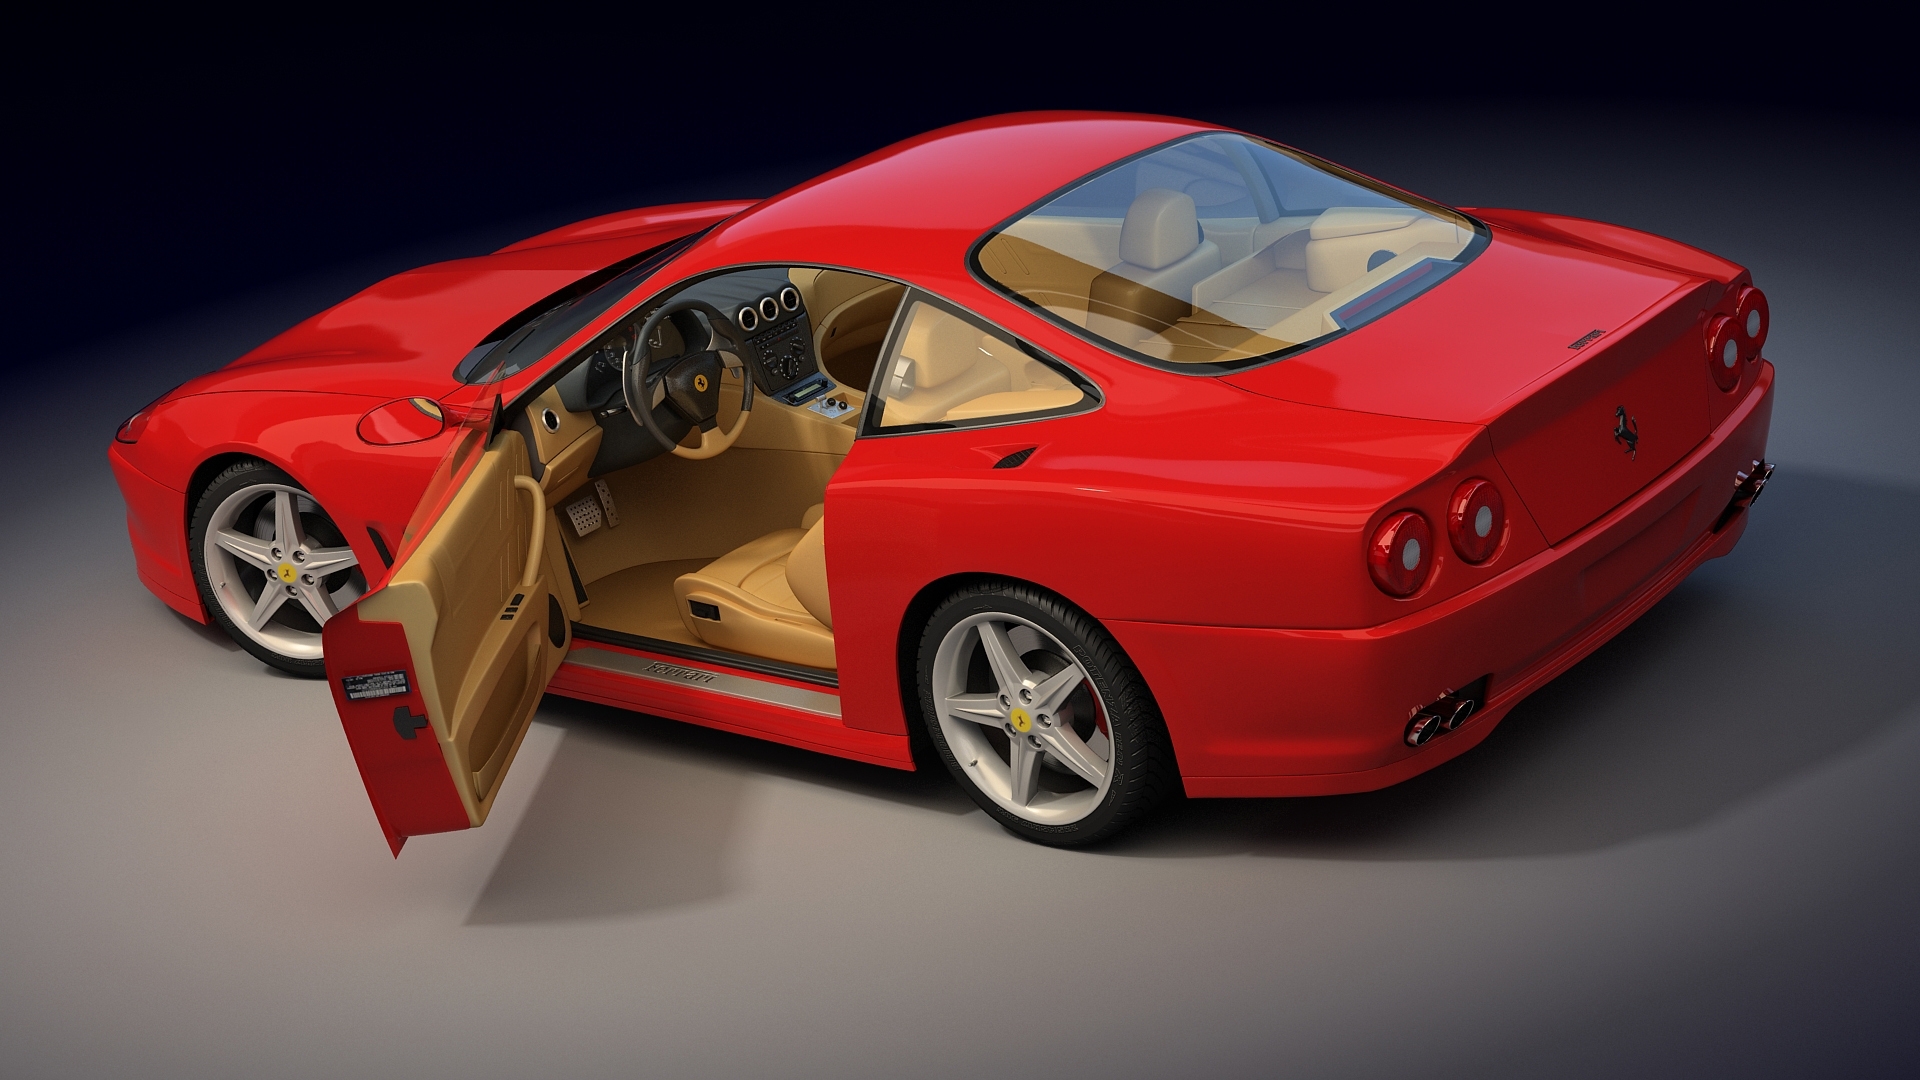 Скачать картинку Транспорт, Машины, Феррари (Ferrari) в телефон бесплатно.